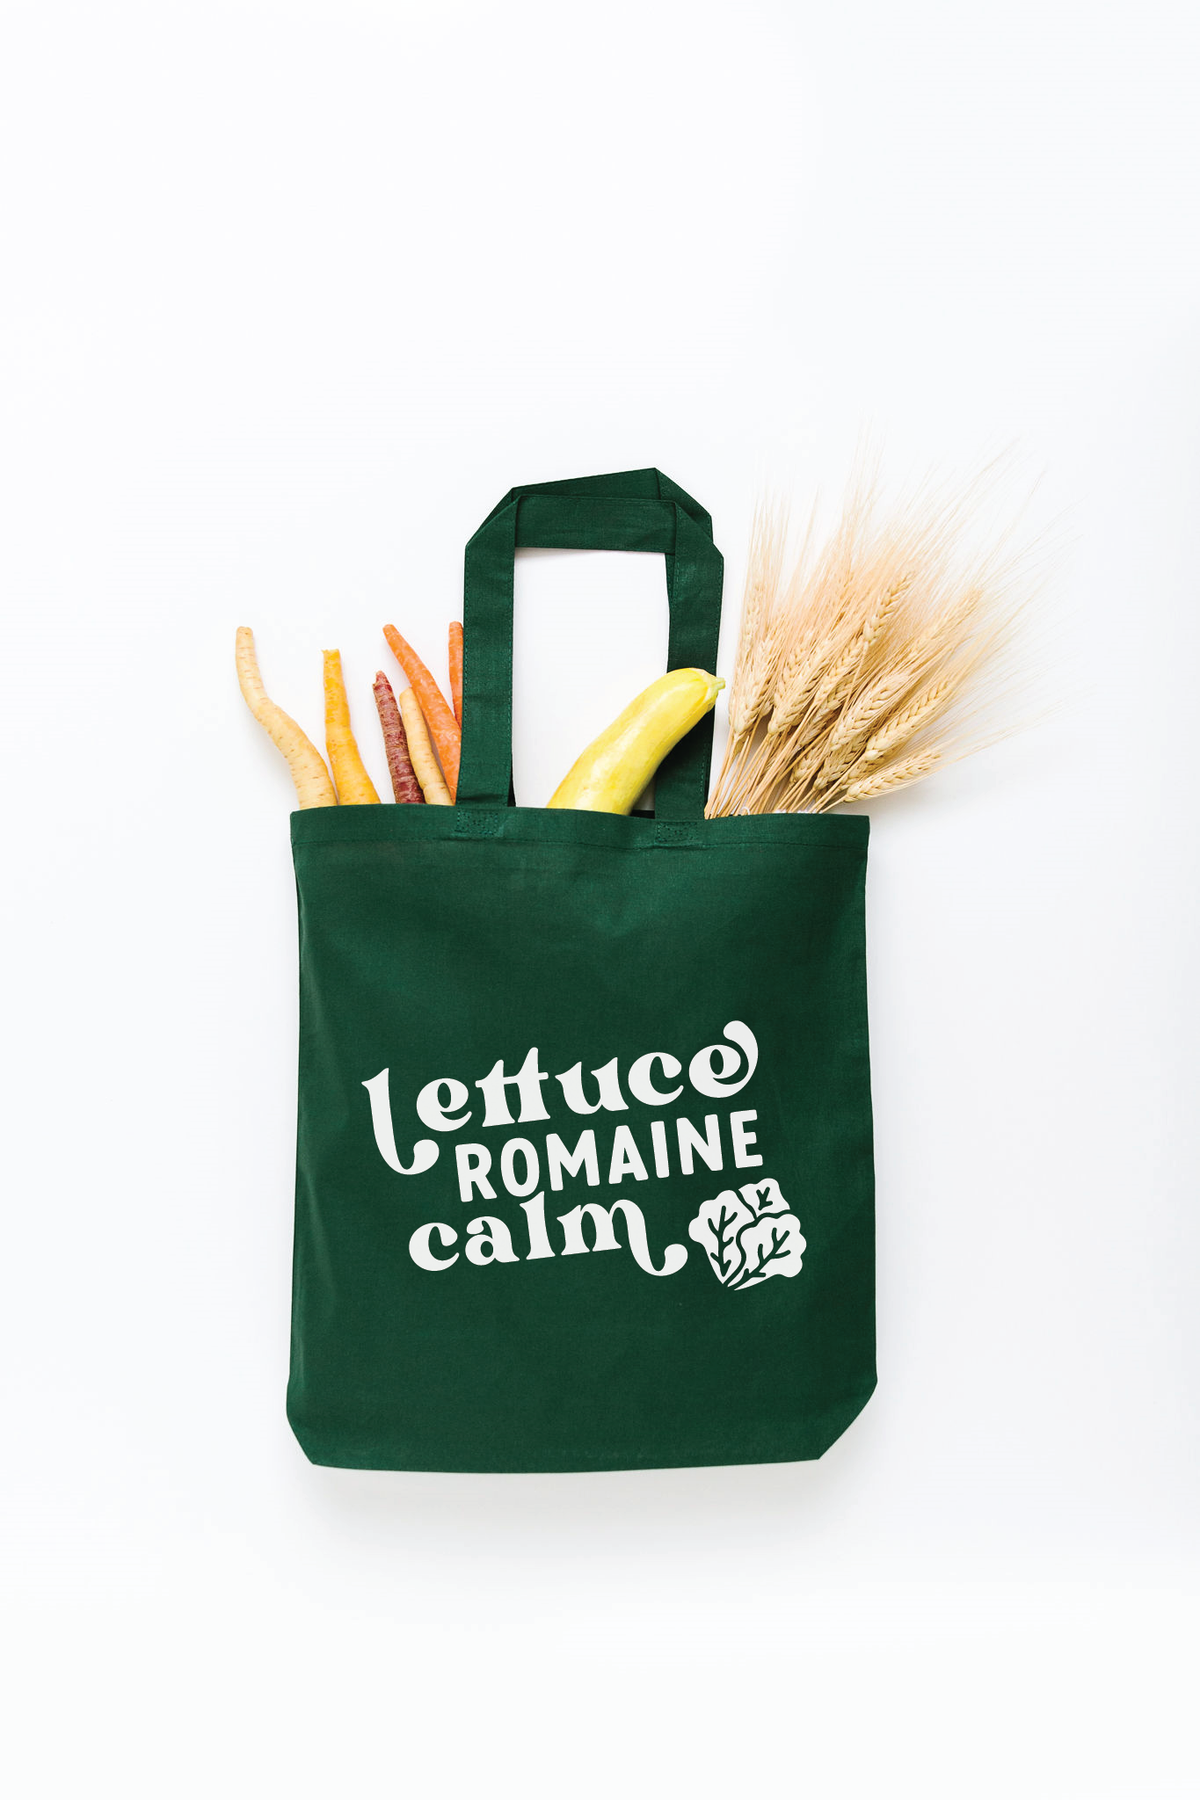 Lettuce Romaine Calm Tote Bag